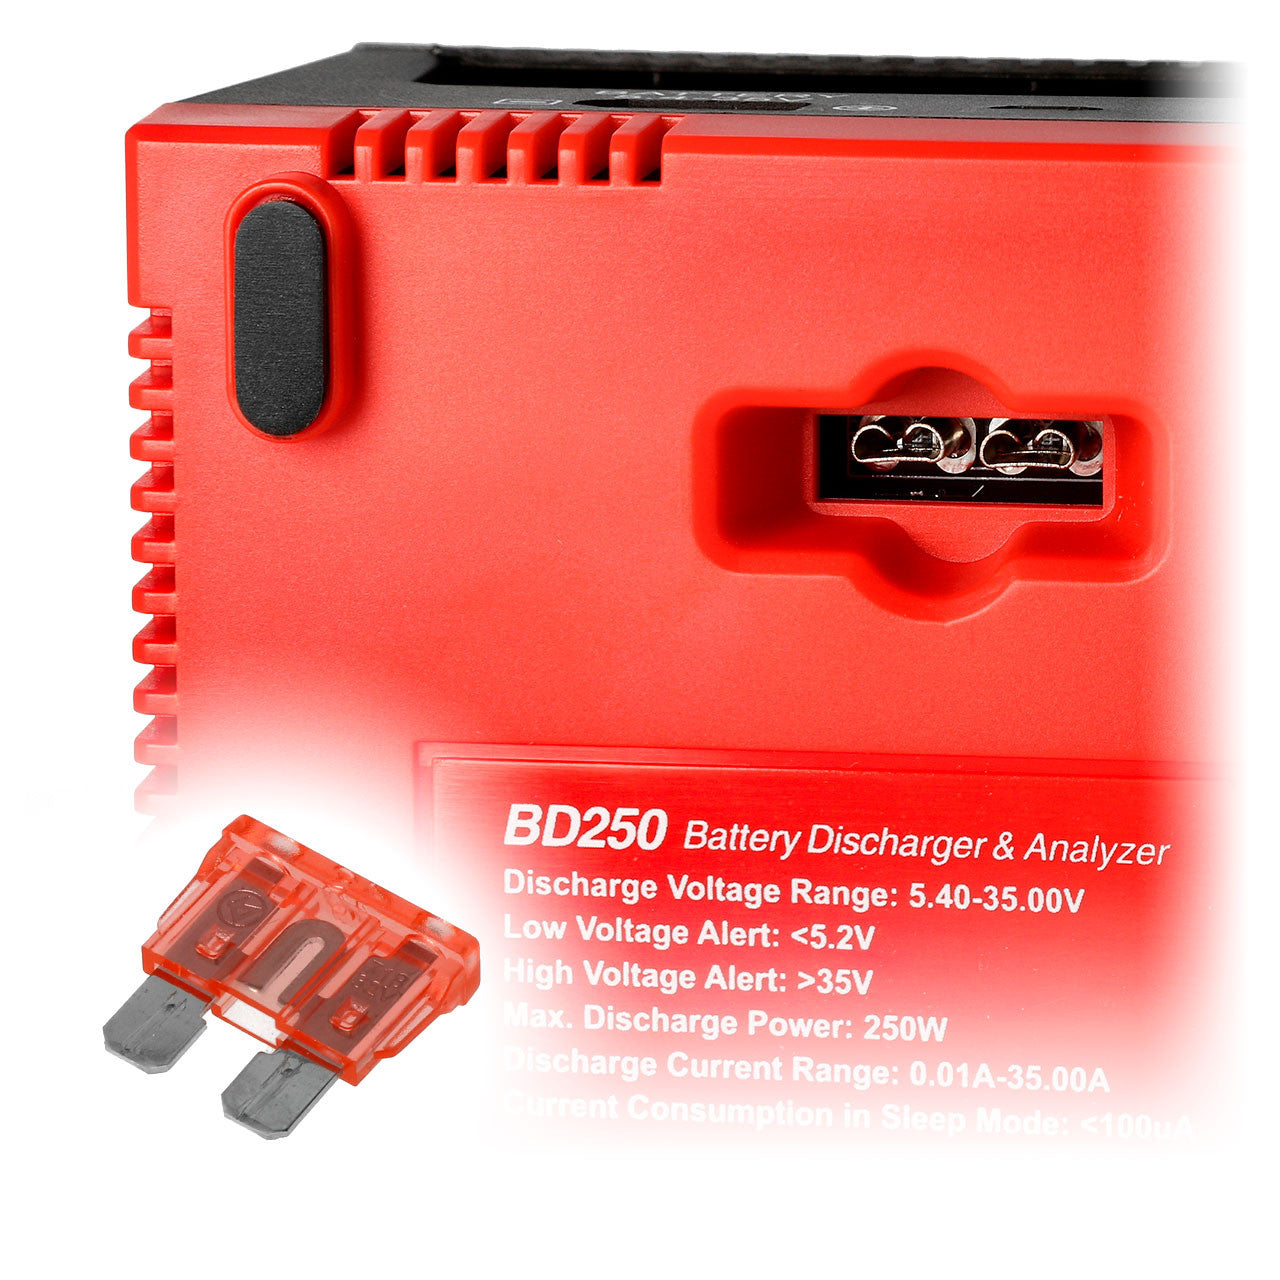 SkyRc Analyseur / Déchargeur de Batterie BD250 250W/33A SK-600133